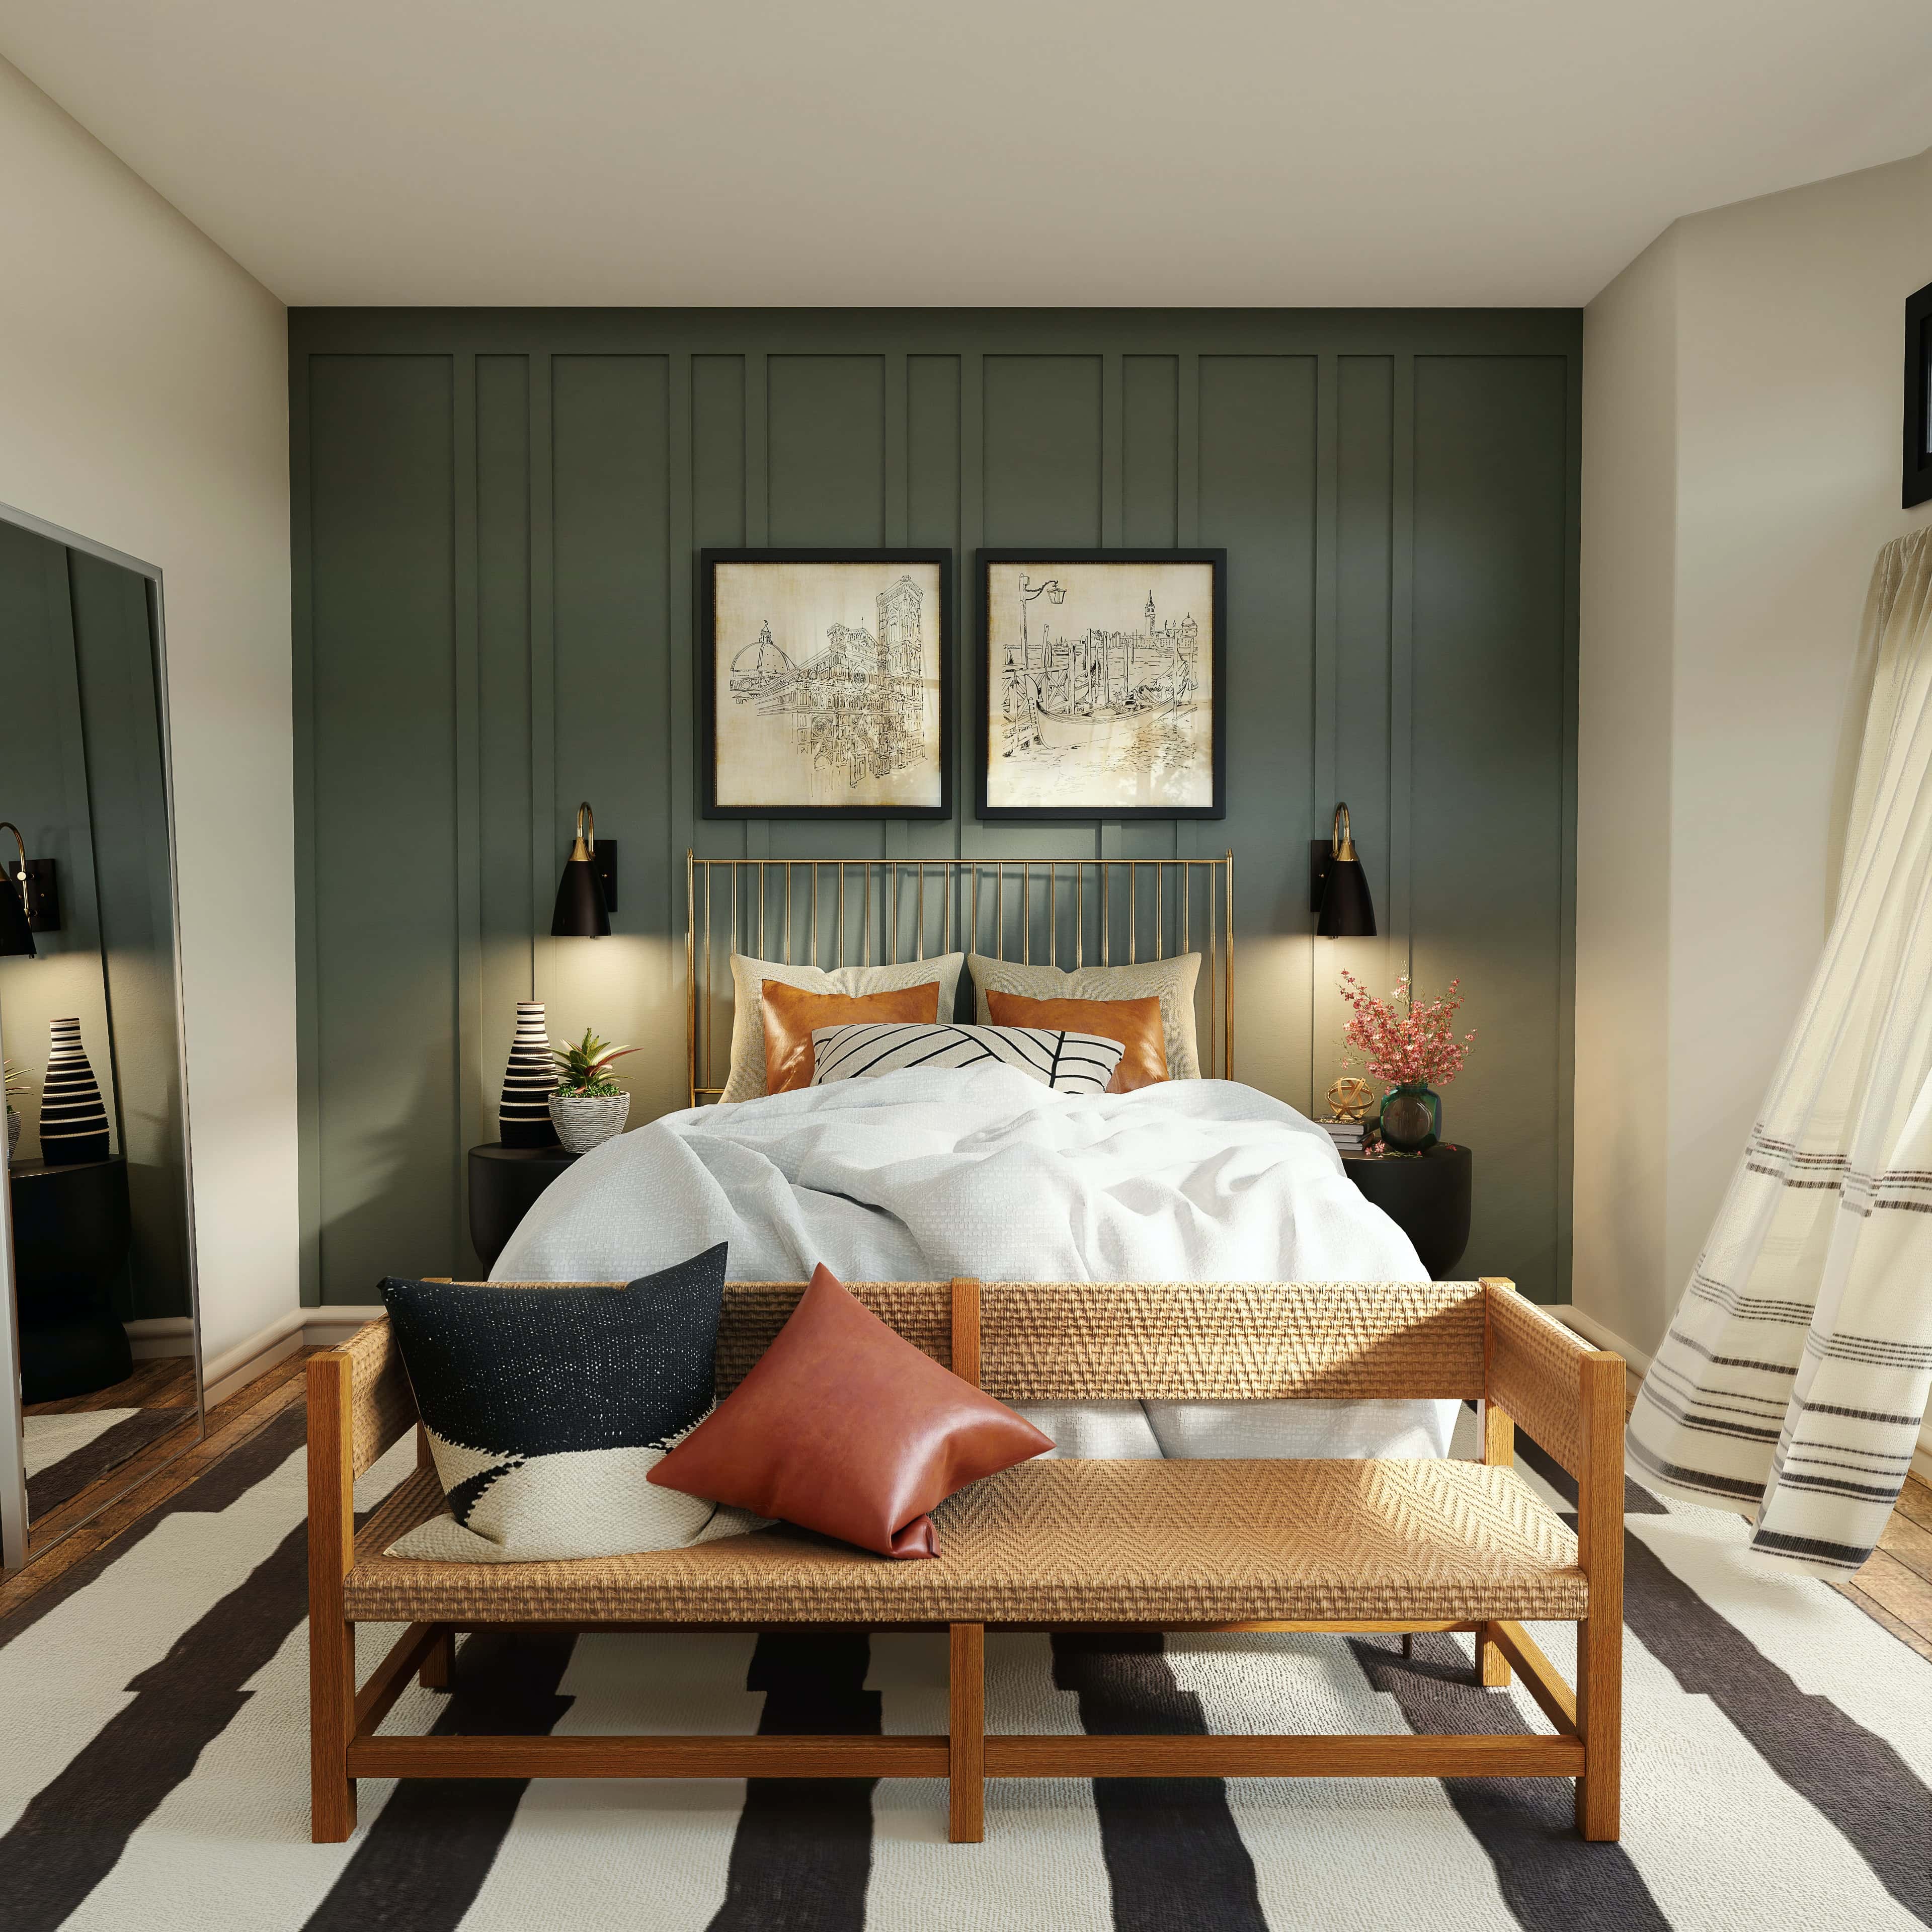 aristo-india-perfect-small-bedroom-design-ideas